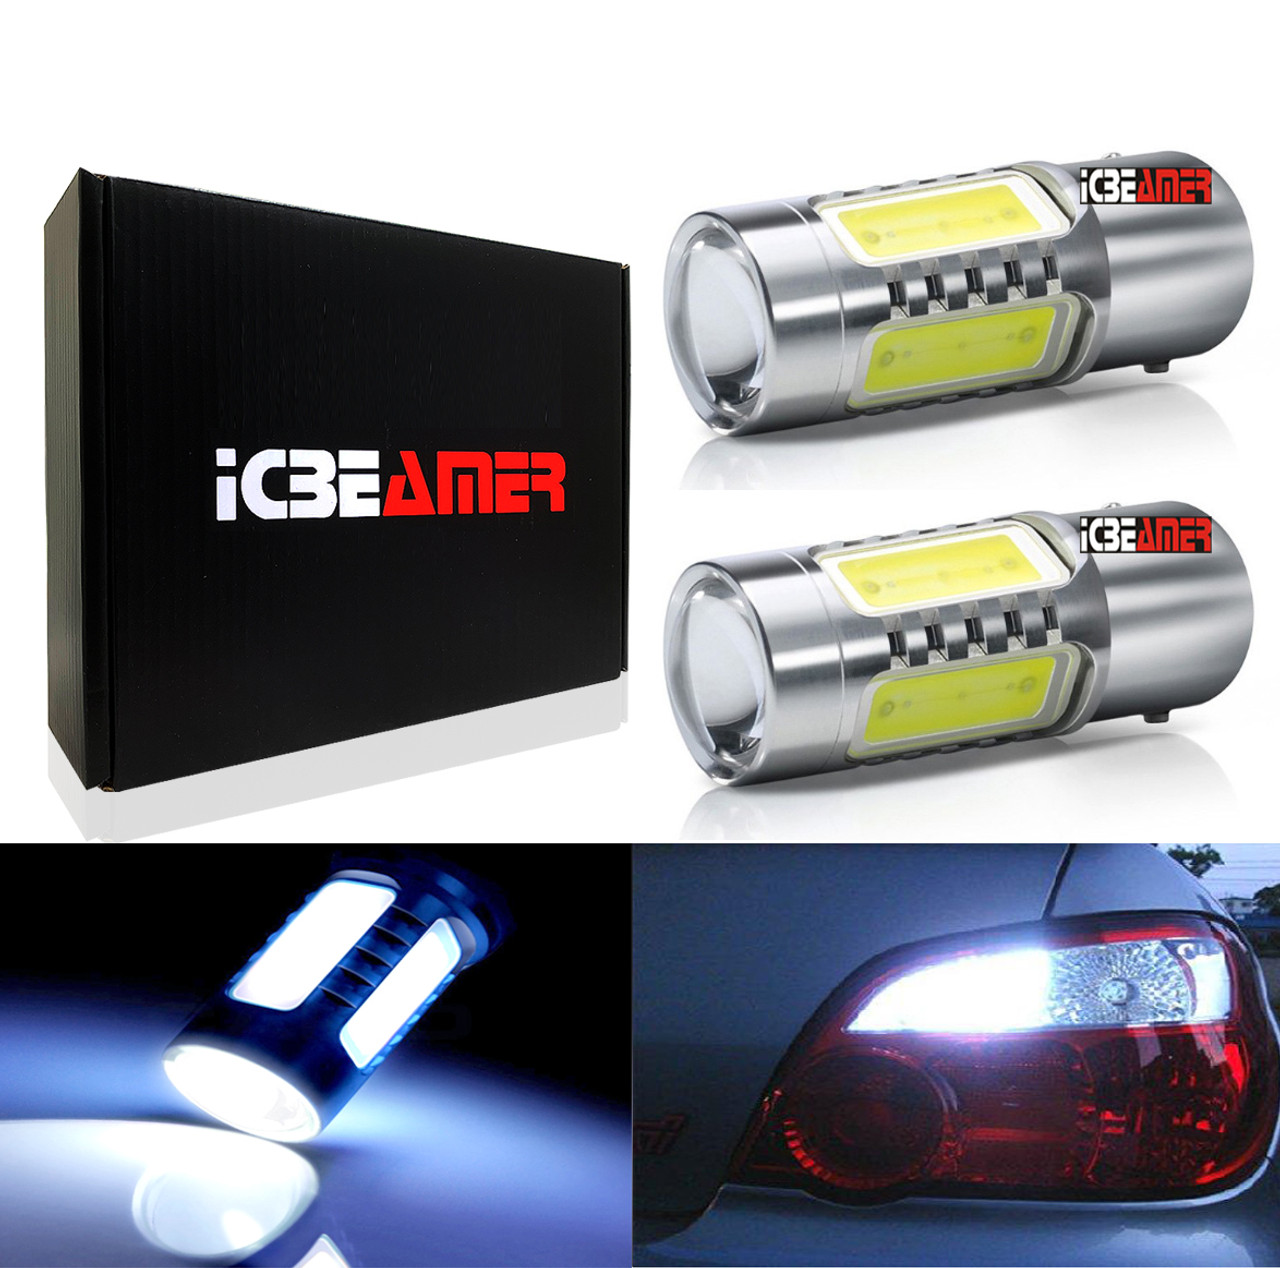 ICBEAMER Bright White 1156 4014 1156 1141 1003 7506 LED 11W Bulbs For Backup  Reverse Lights,Xenon White(Pack of 2 pcs) - ICBEAMER